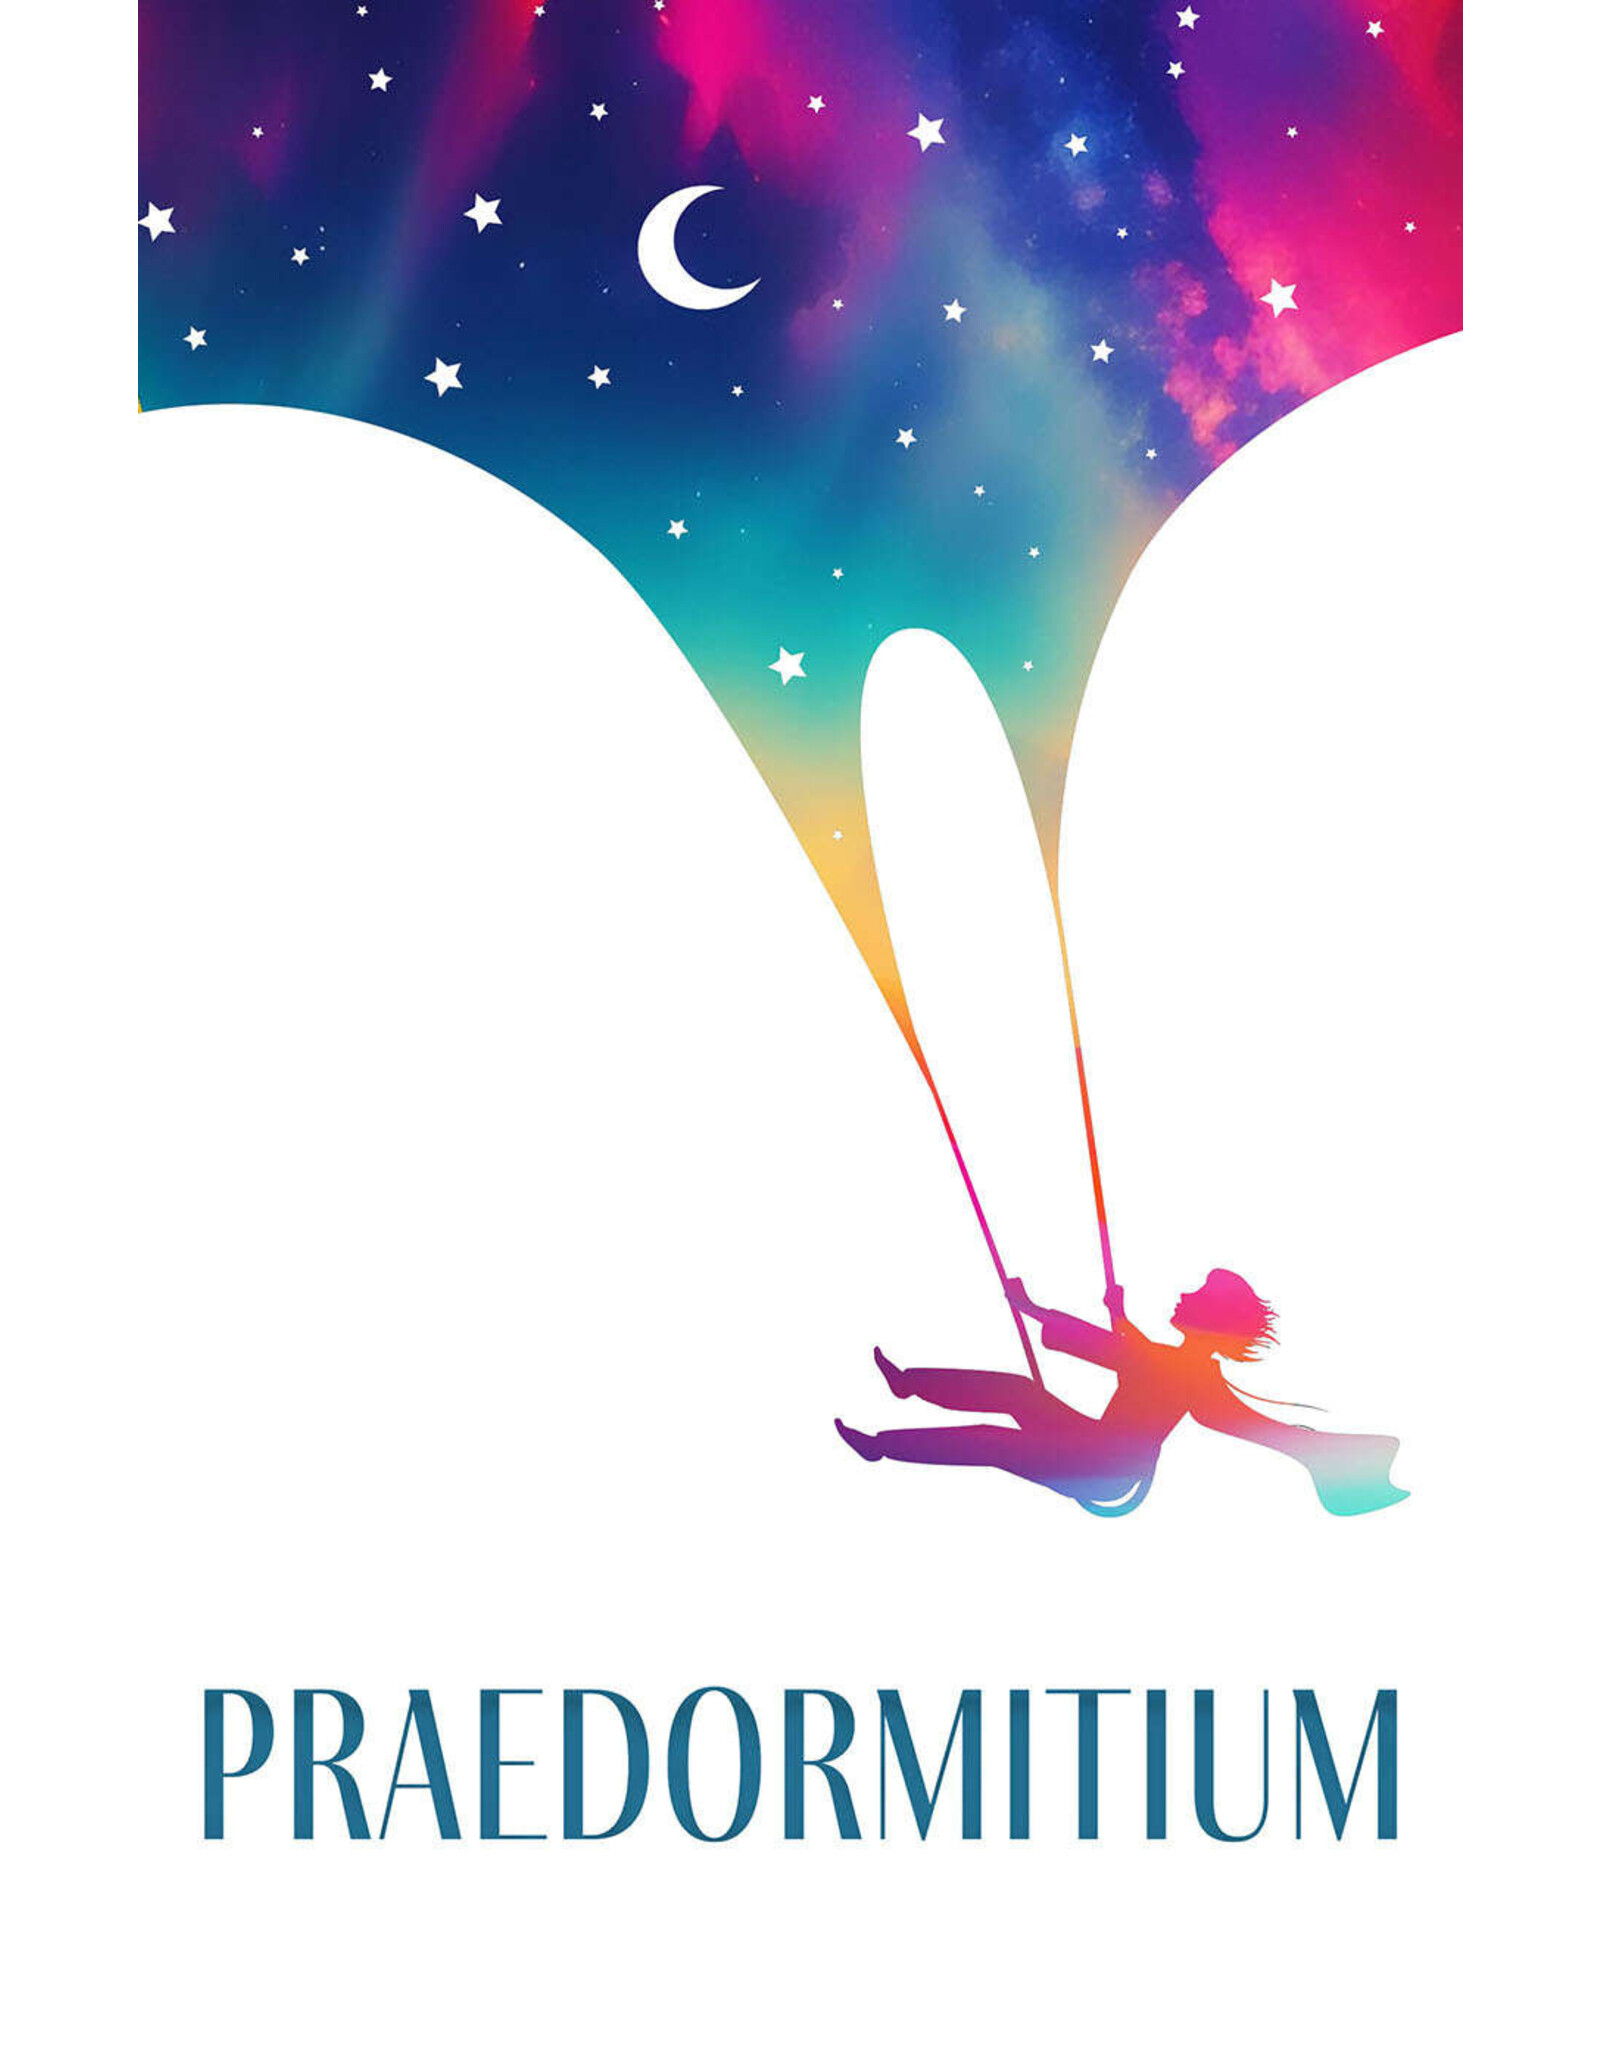 Praedormitium